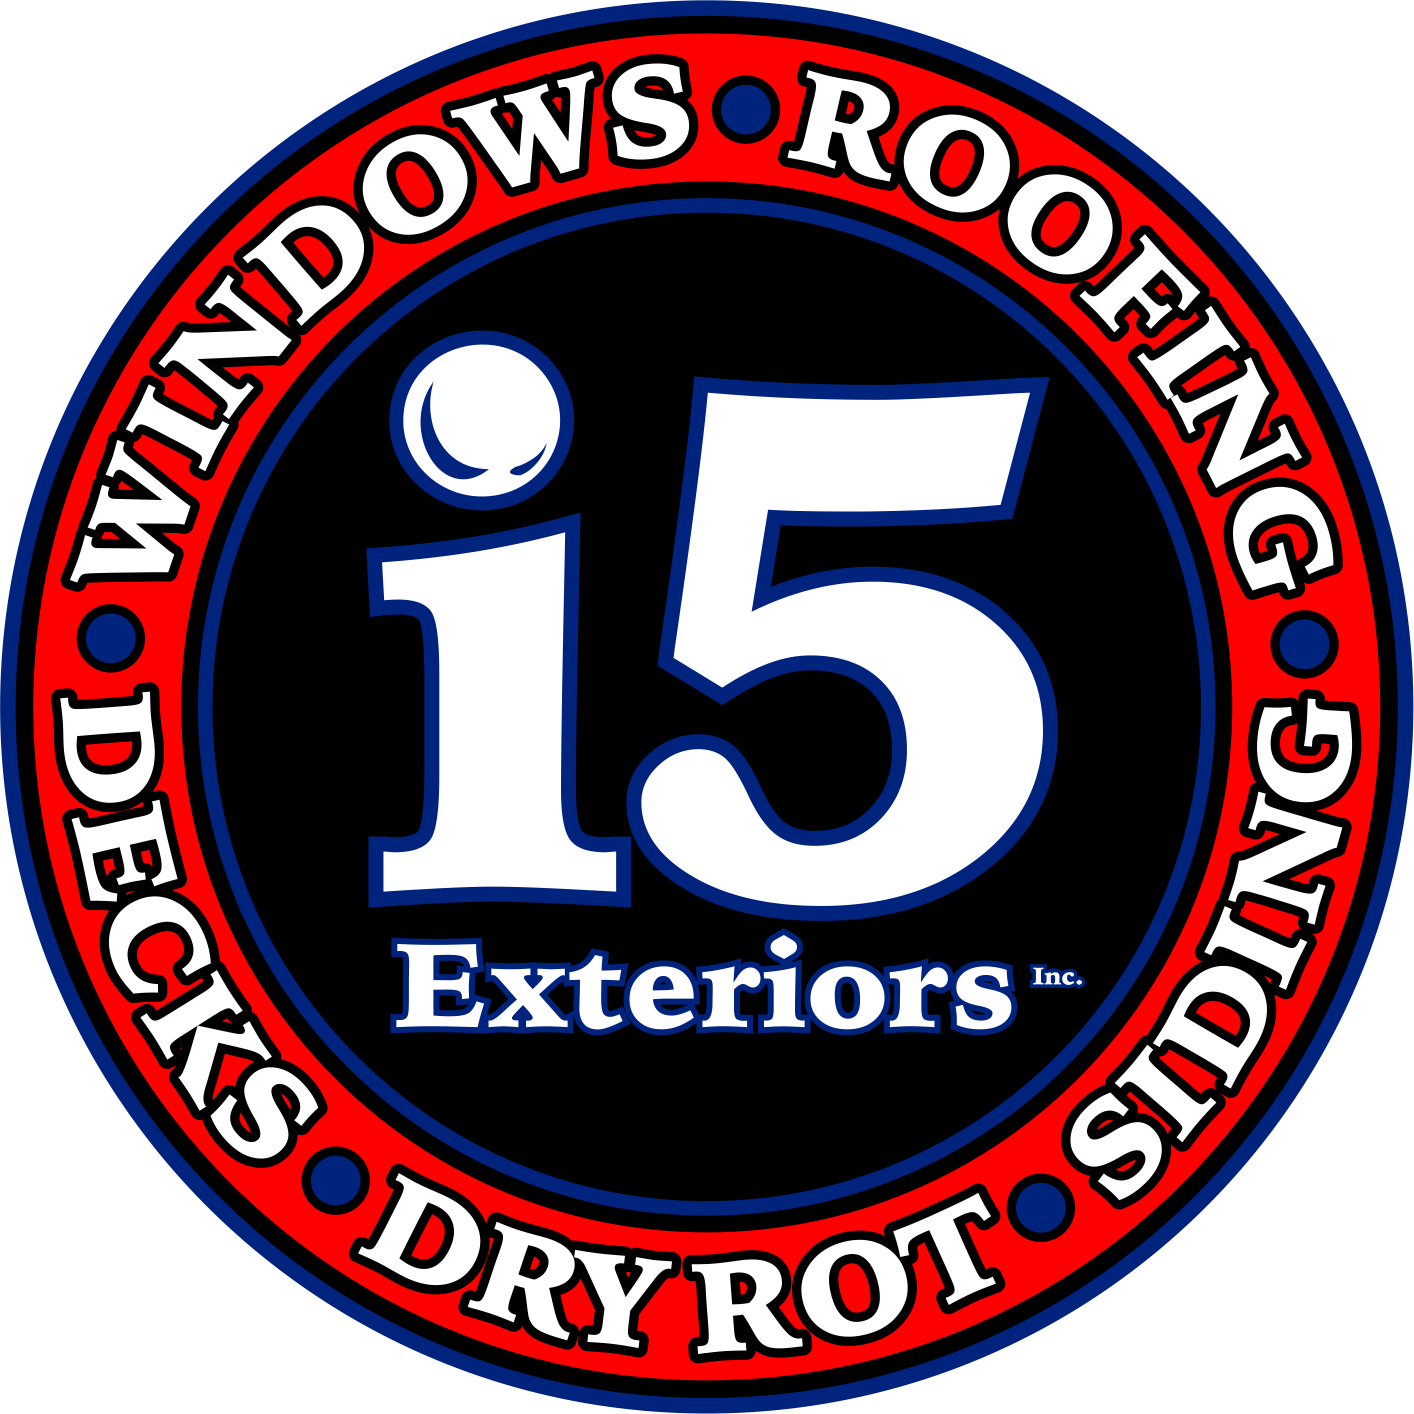 I 5 Exteriors, Inc. Logo